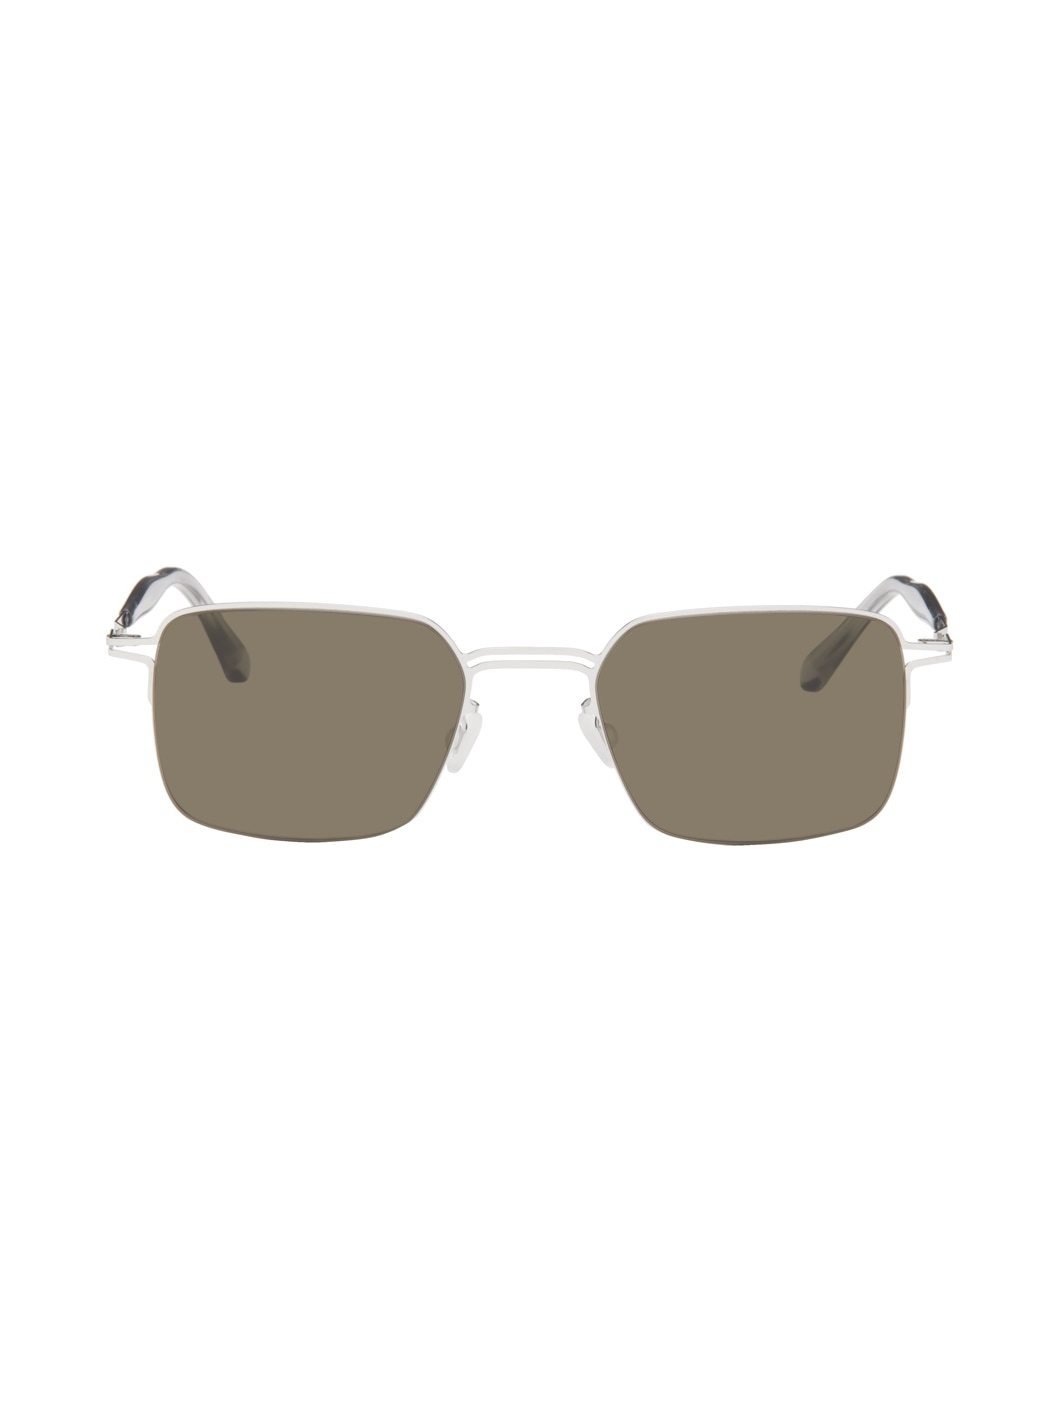 Silver Alcott Sunglasses - 1